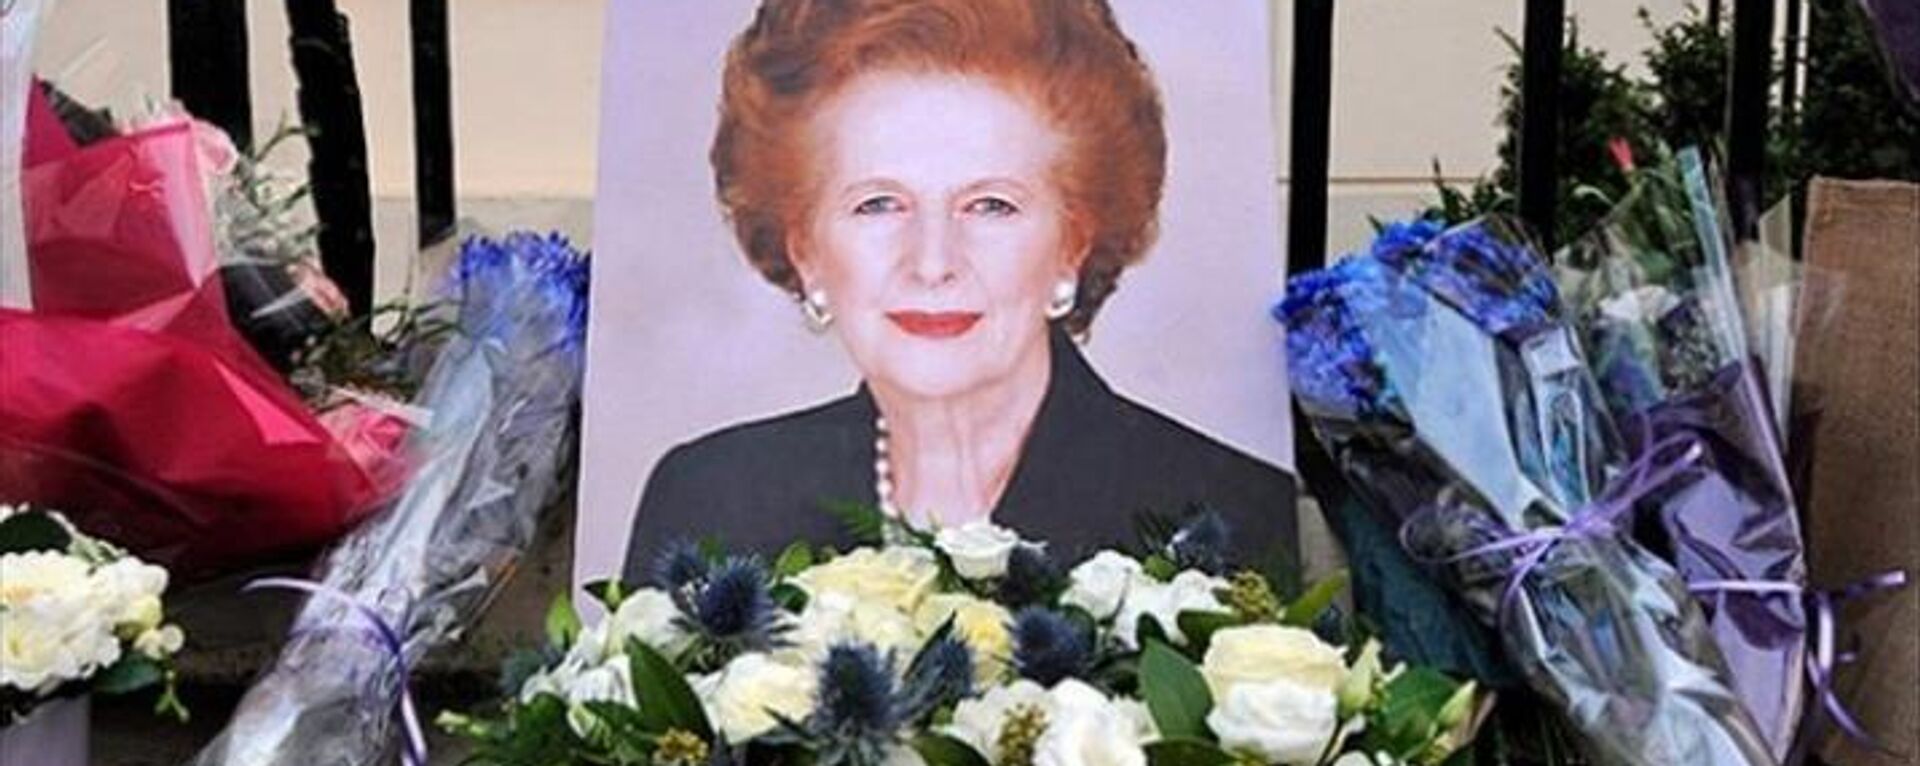 'Demir Leydi' lakaplı Margaret Thatcher'ın 2013'teki ölümünün ardından bırakılan çiçekler - Sputnik Türkiye, 1920, 16.05.2022